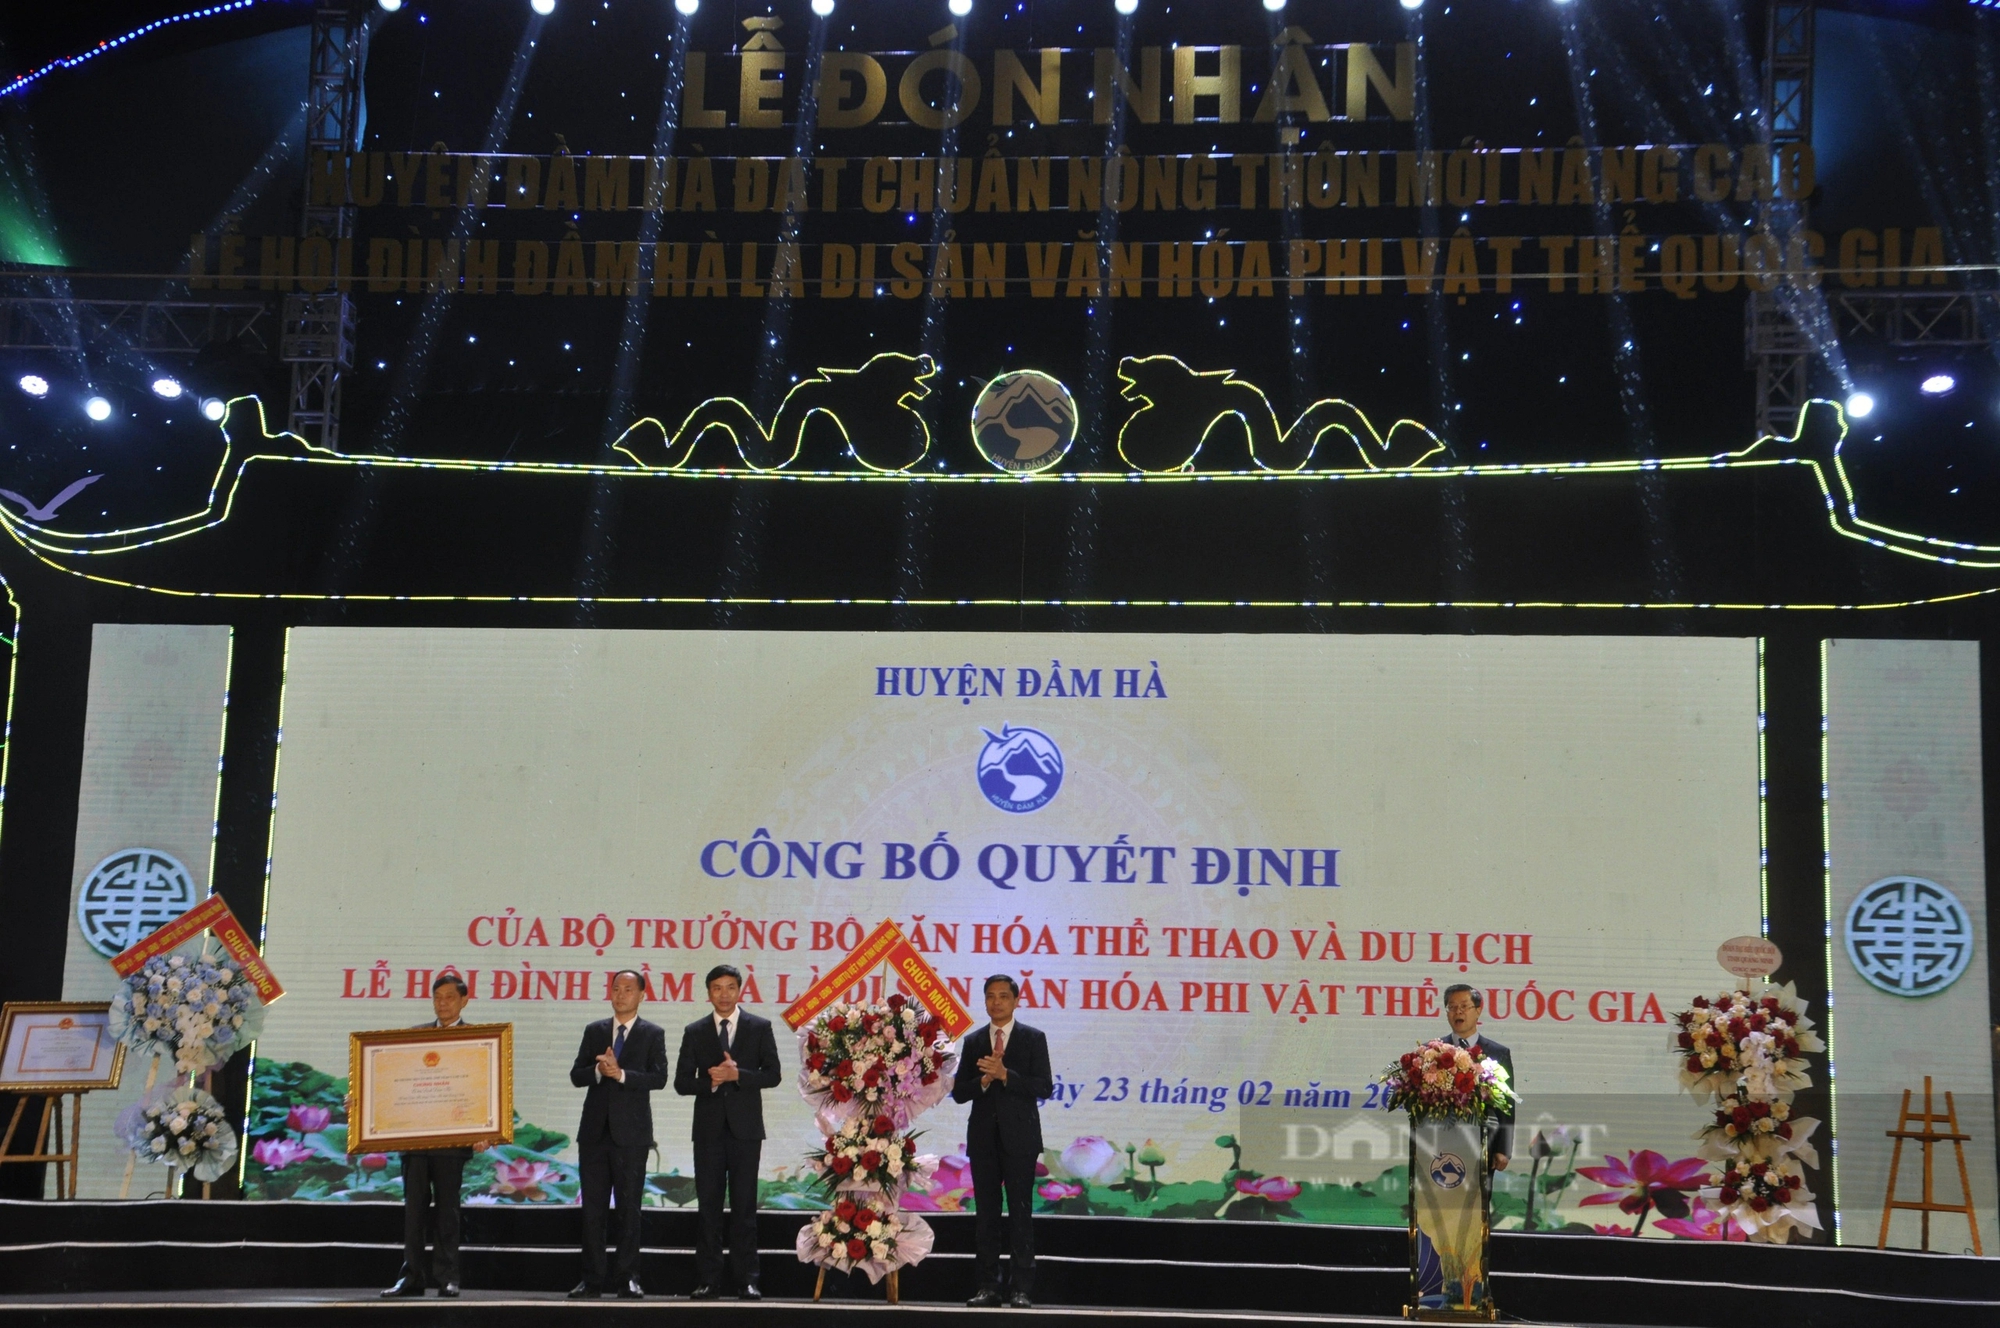 Nét độc đáo của lễ hội ở Quảng Ninh vừa được công nhận Di sản văn hóa phi vật thể cấp quốc gia - Ảnh 5.